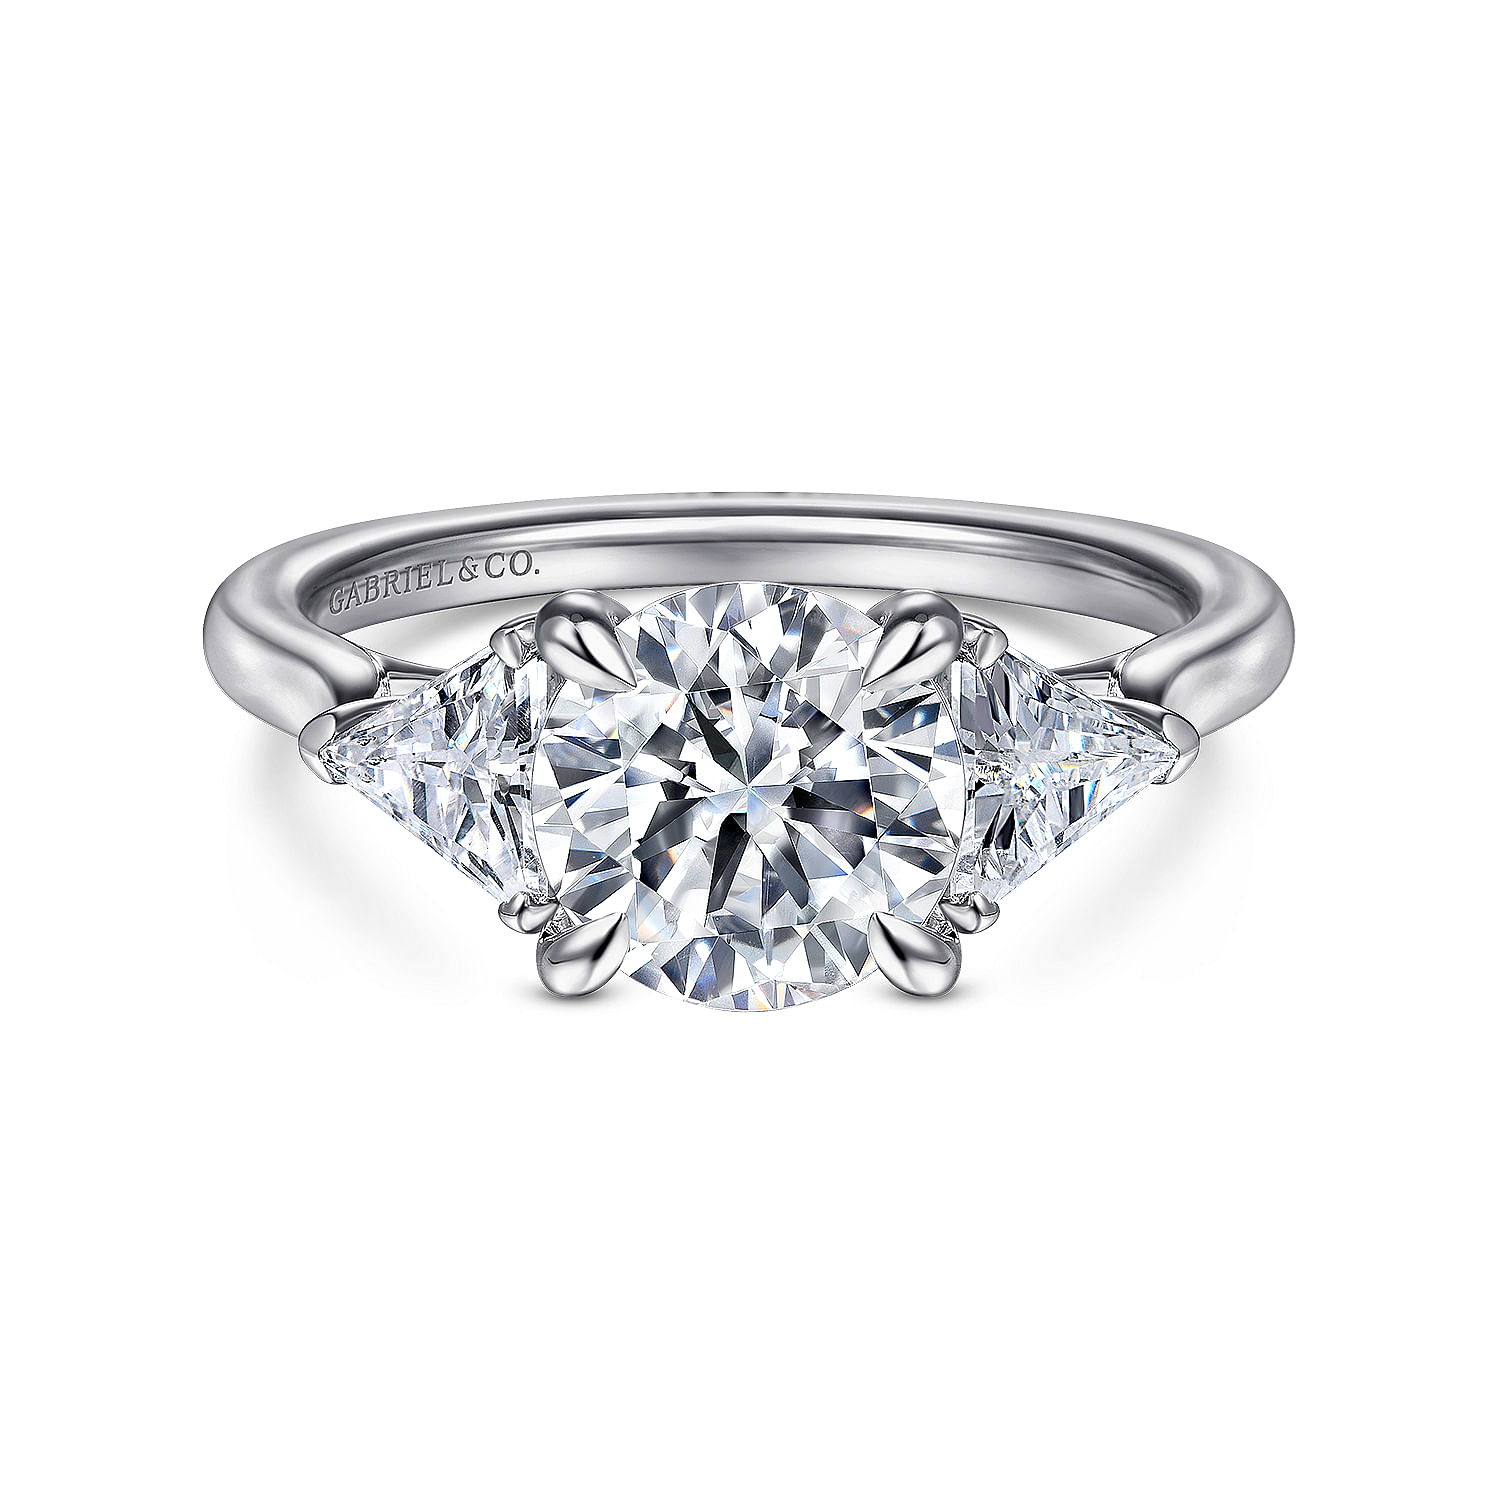 Maloney---14K-White-Gold-Round-Three-Stone-Diamond-Engagement-Ring1